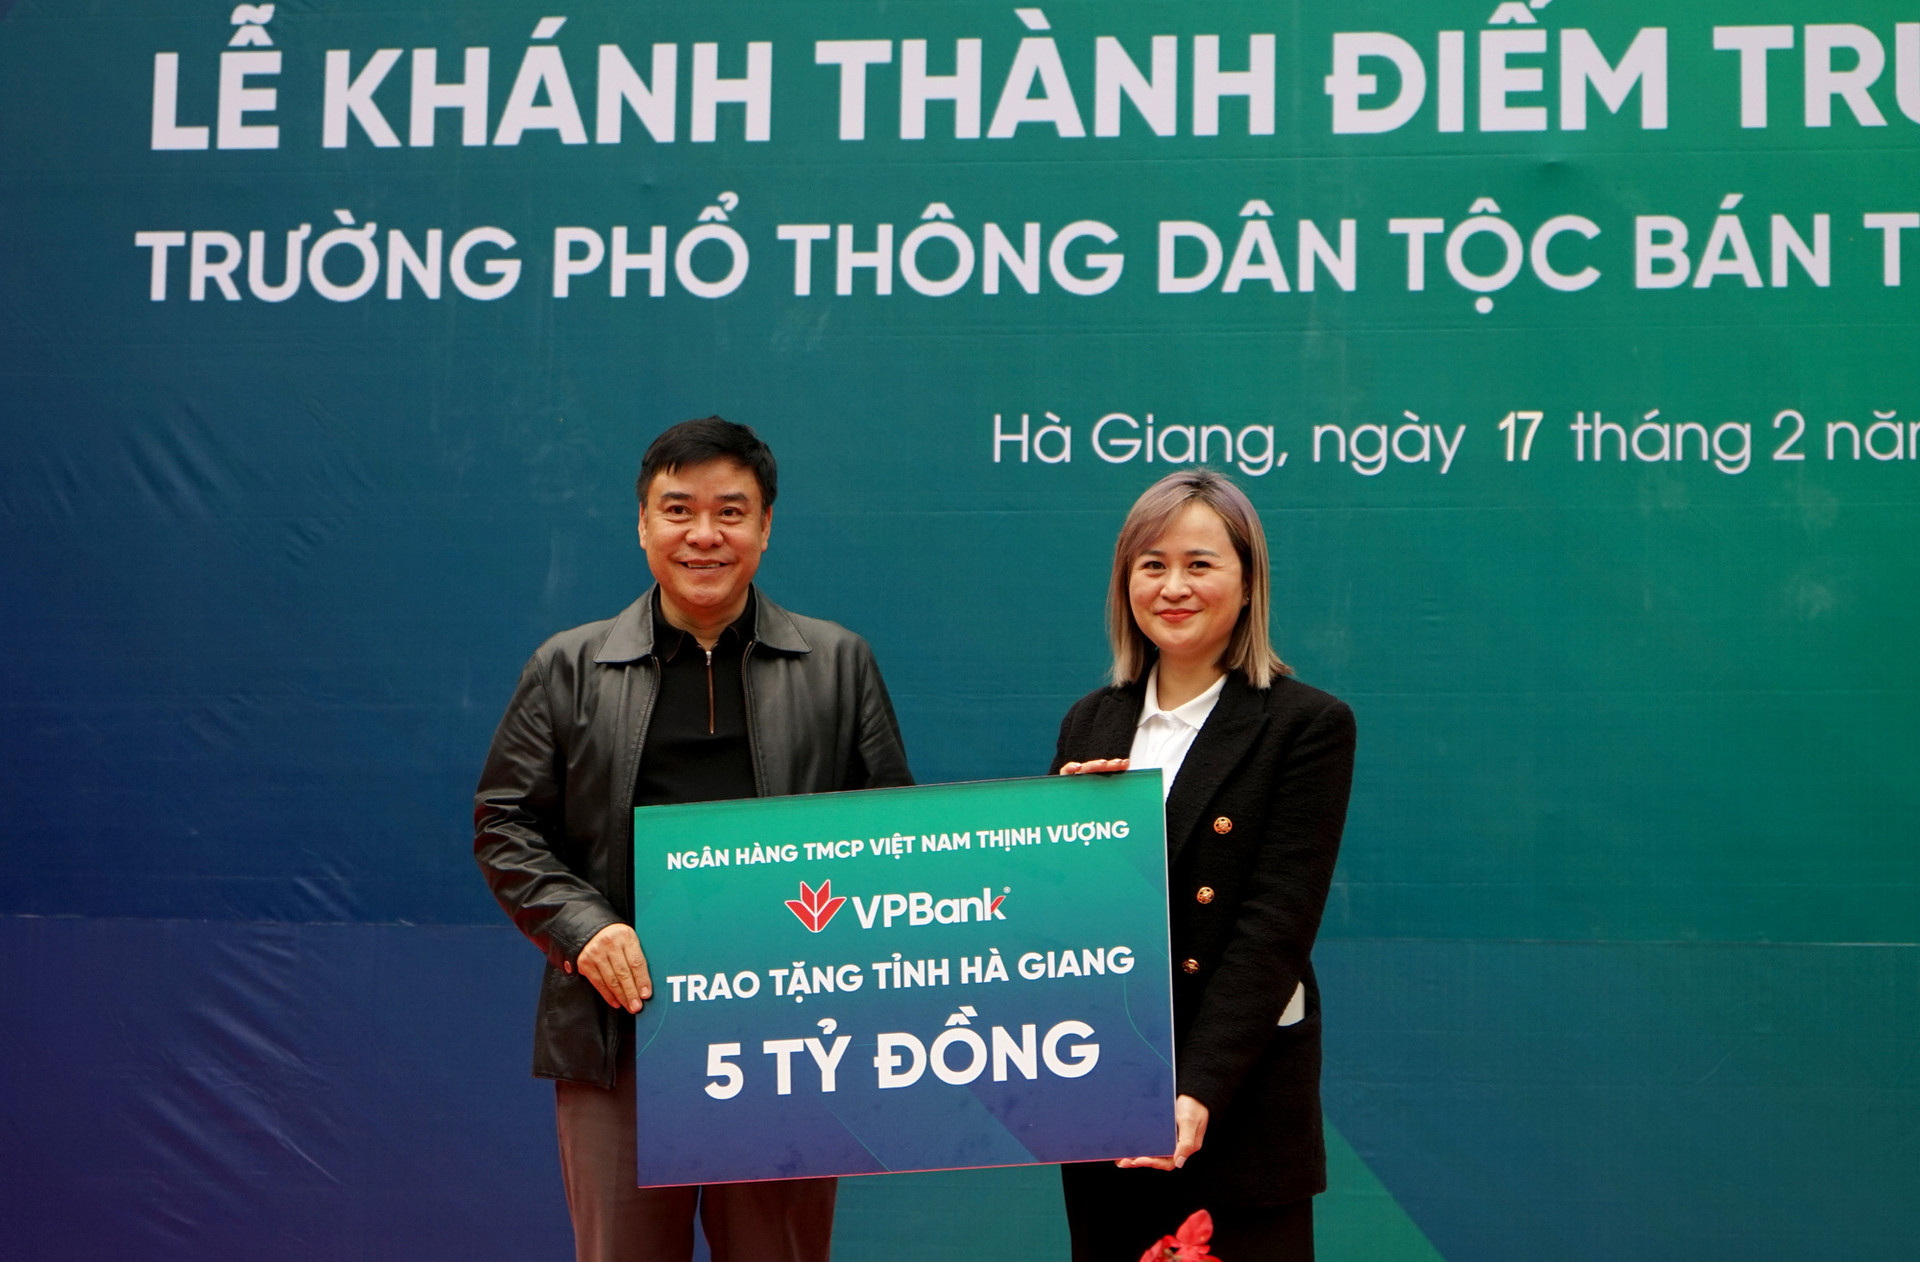 Đại diện VPBank trao tặng tỉnh Hà Giang 5 tỉ đồng xây dựng, sửa chữa lớp học - Ảnh: VŨ TUẤN